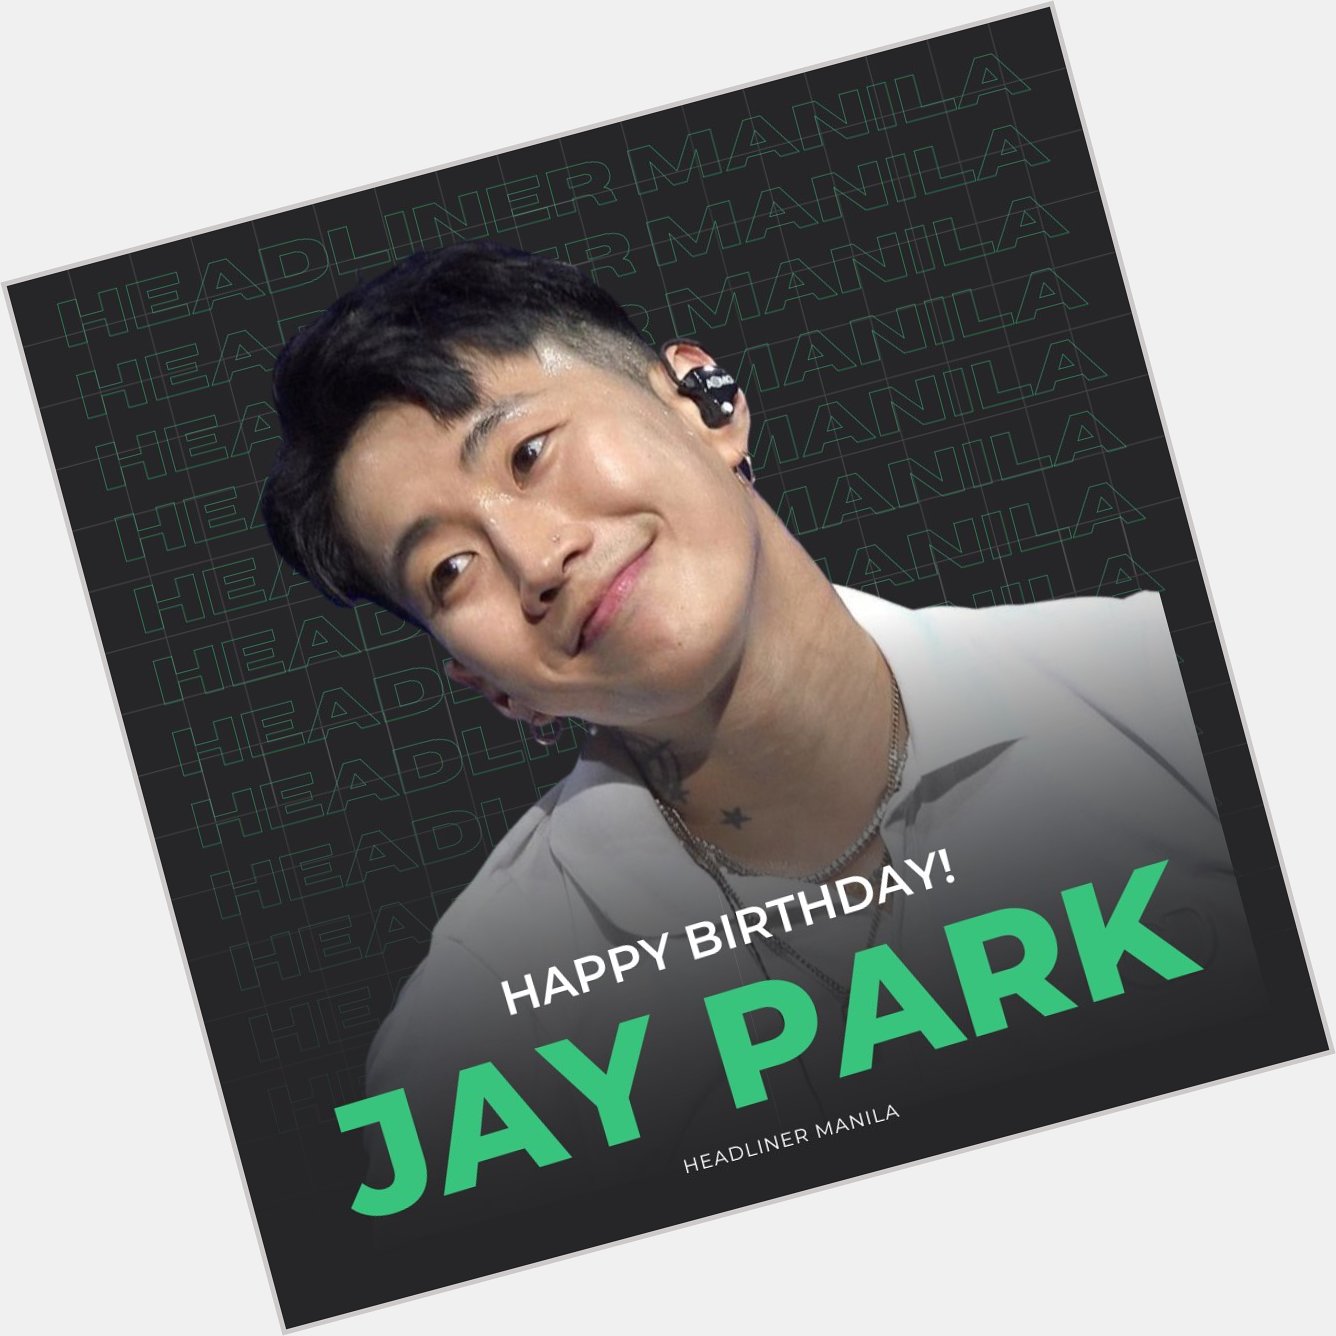 Happy Birthday to Jay Park    